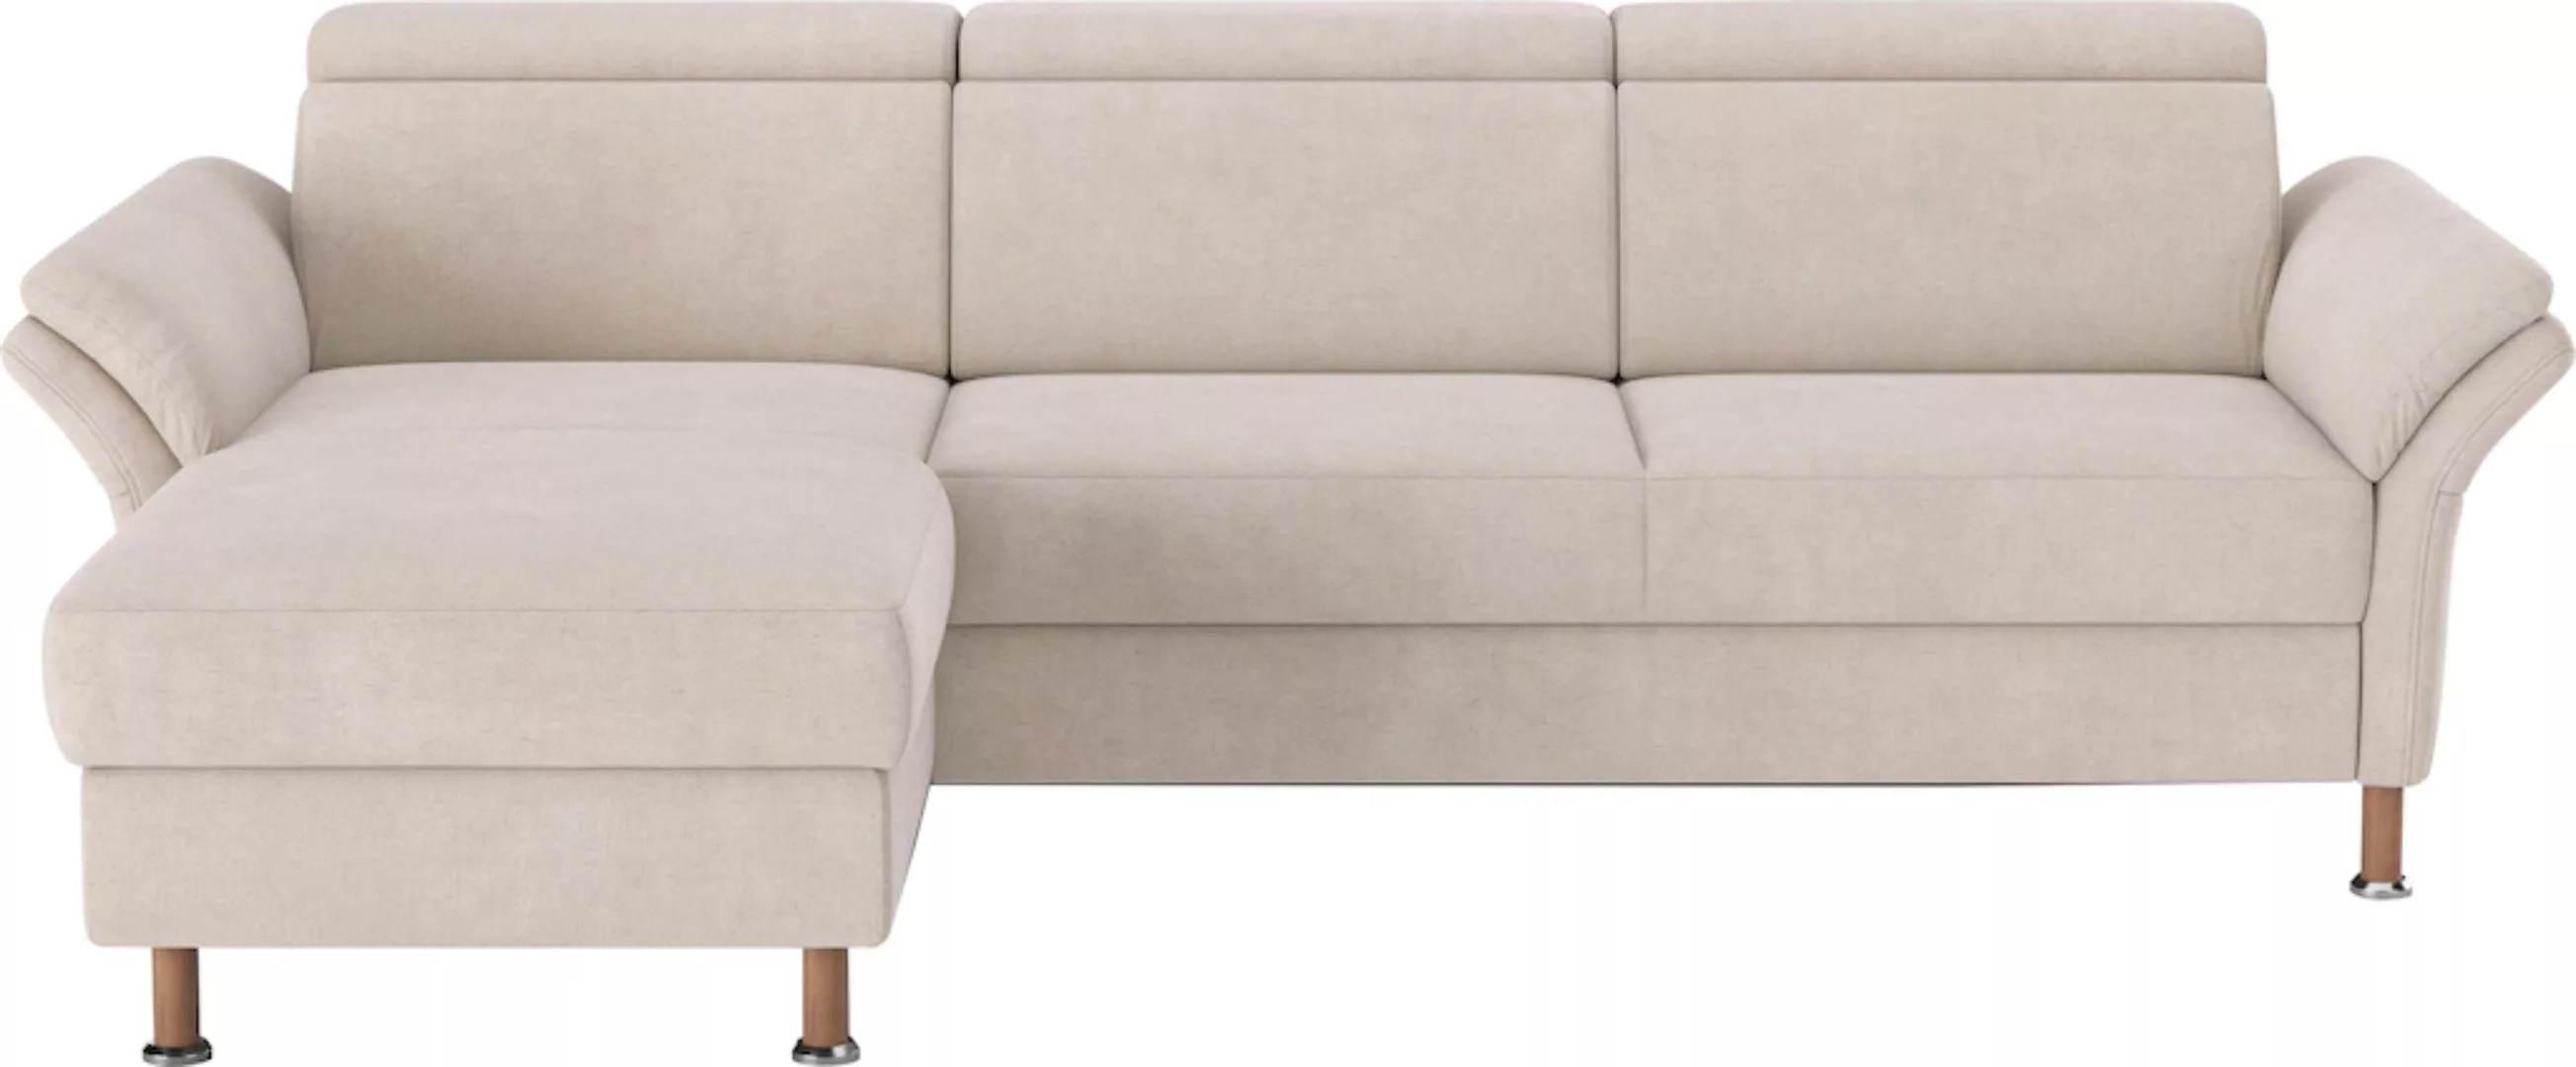 Home affaire Ecksofa "Calypso L-Form", mit motorischen Funktionen im Sofa u günstig online kaufen